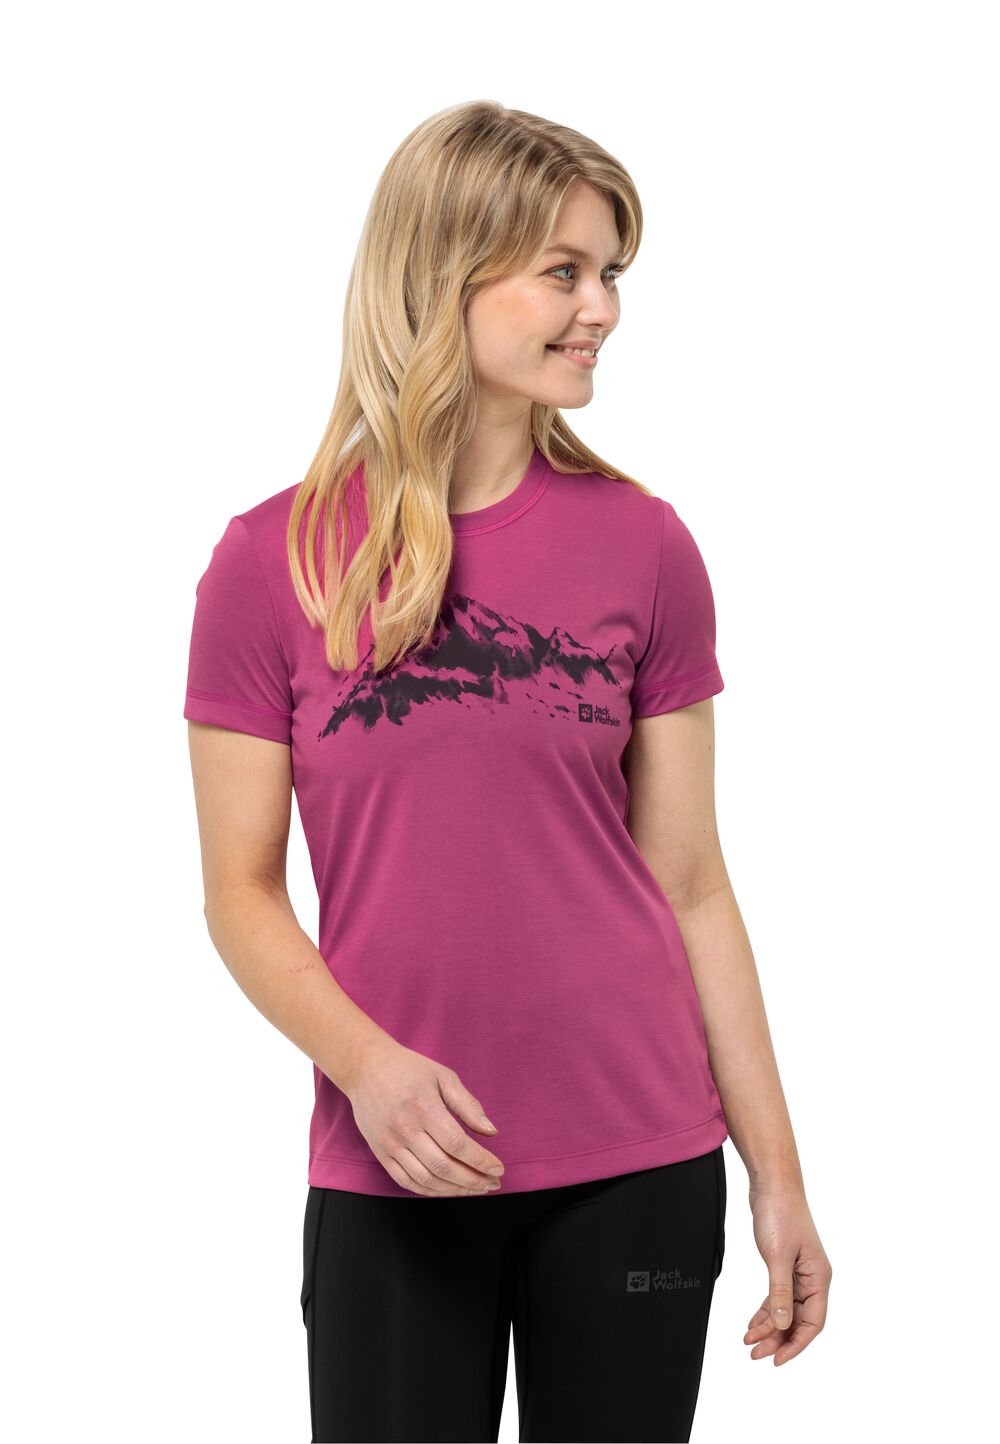 Jack Wolfskin Damen T-shirt Hiking S/S T-Shirt Women XL new magenta new magenta von Jack Wolfskin